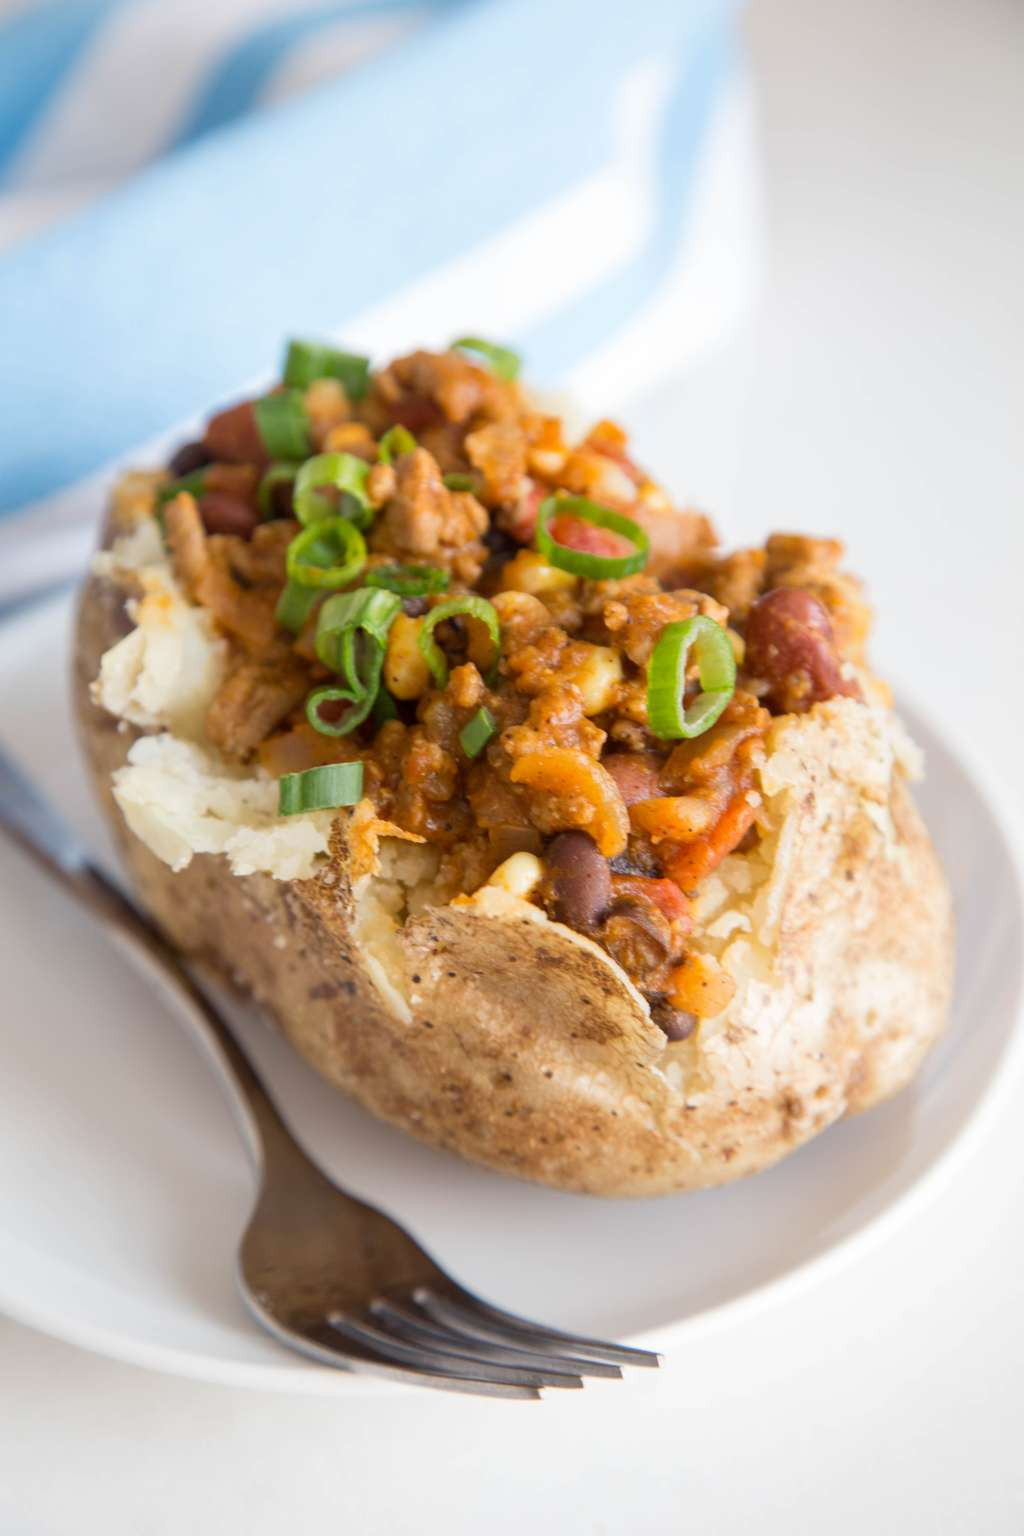 Potato In Microwave
 Microwave Baked Potato Recipe